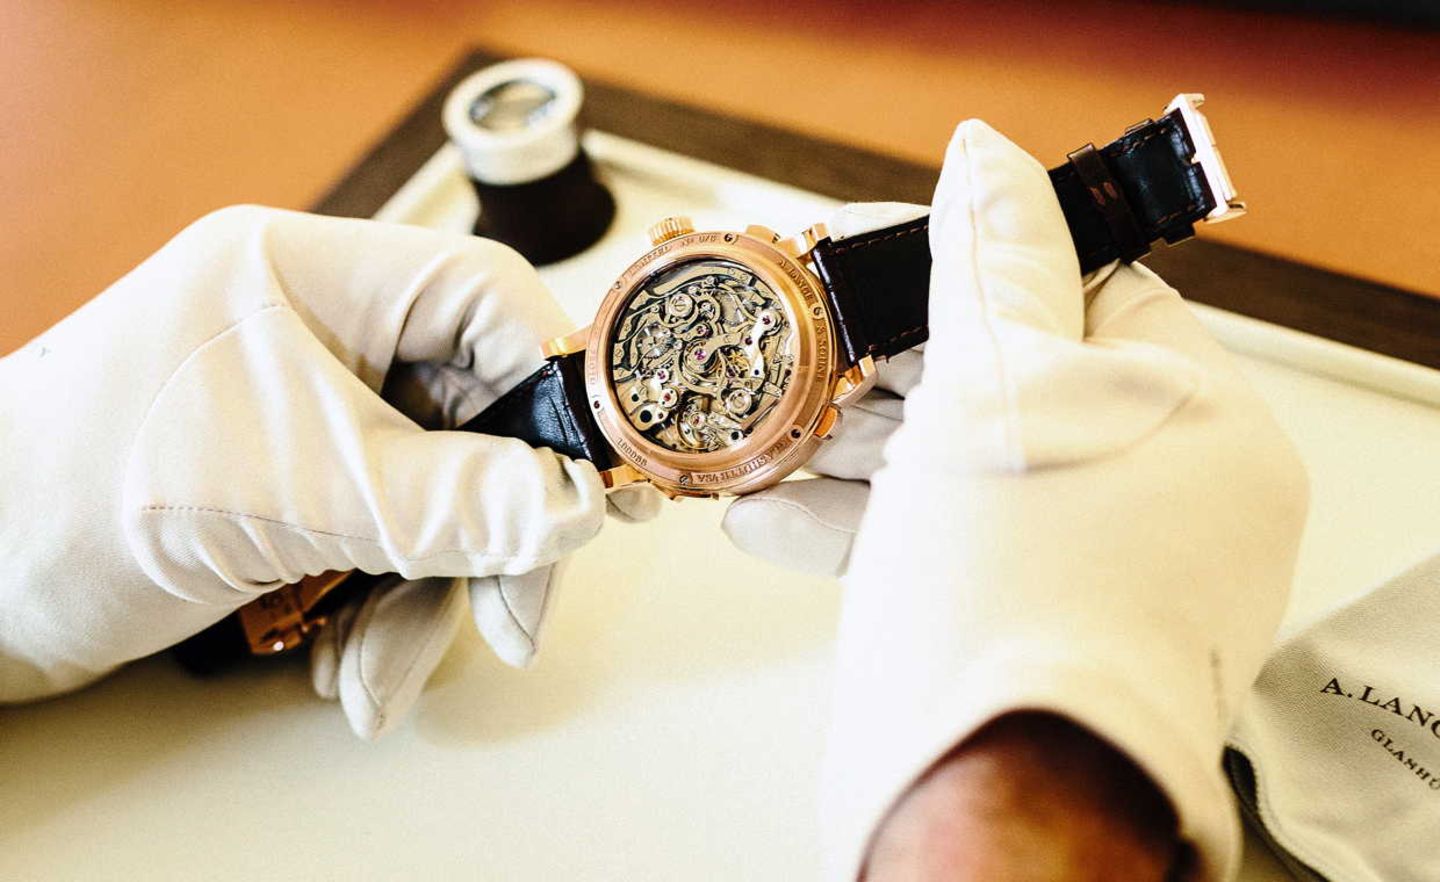 Die teuerste Armbanduhr aus Glashütte: die Grand Complication von A. Lange & Söhne